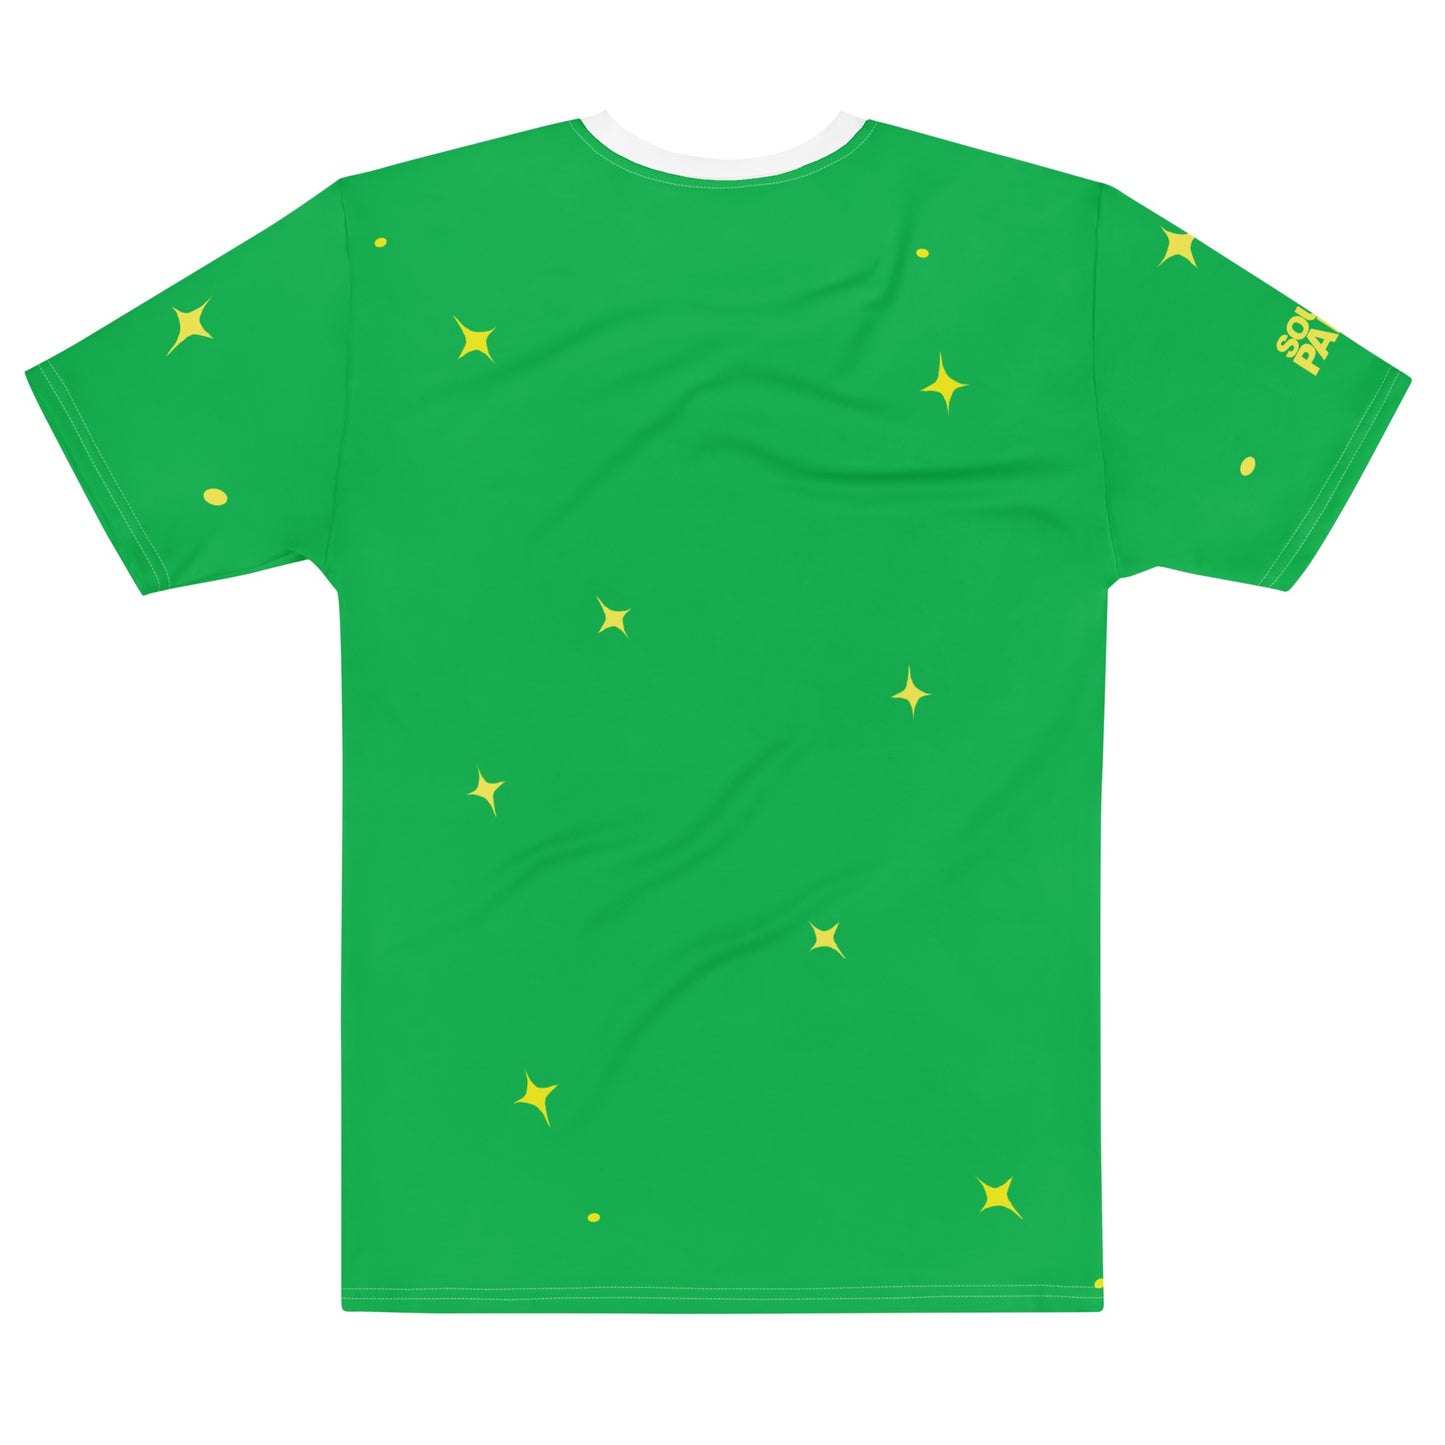 South Park Irish Randy T-Shirt